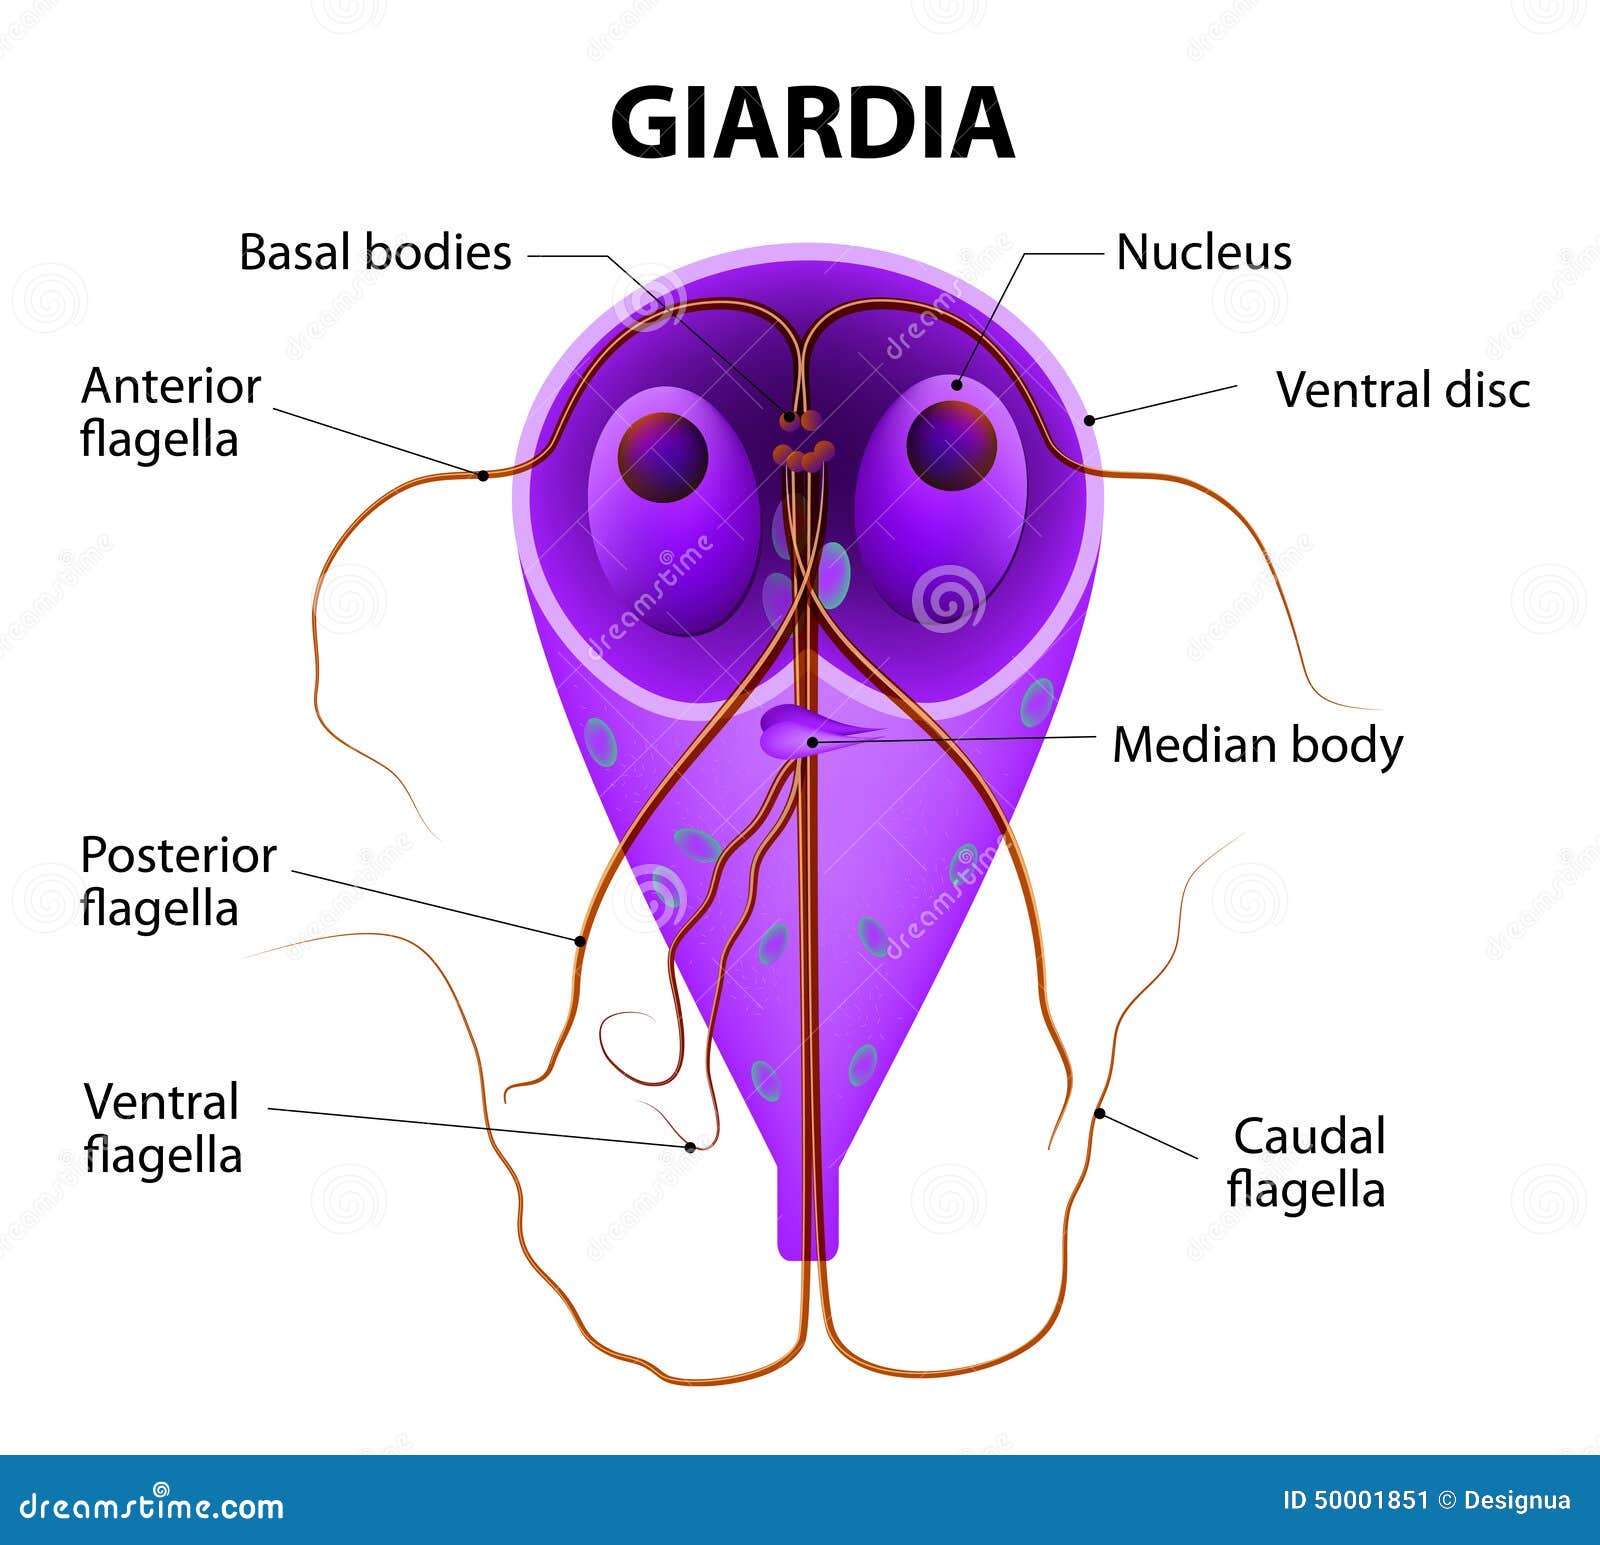 giardia intestinalis treatment